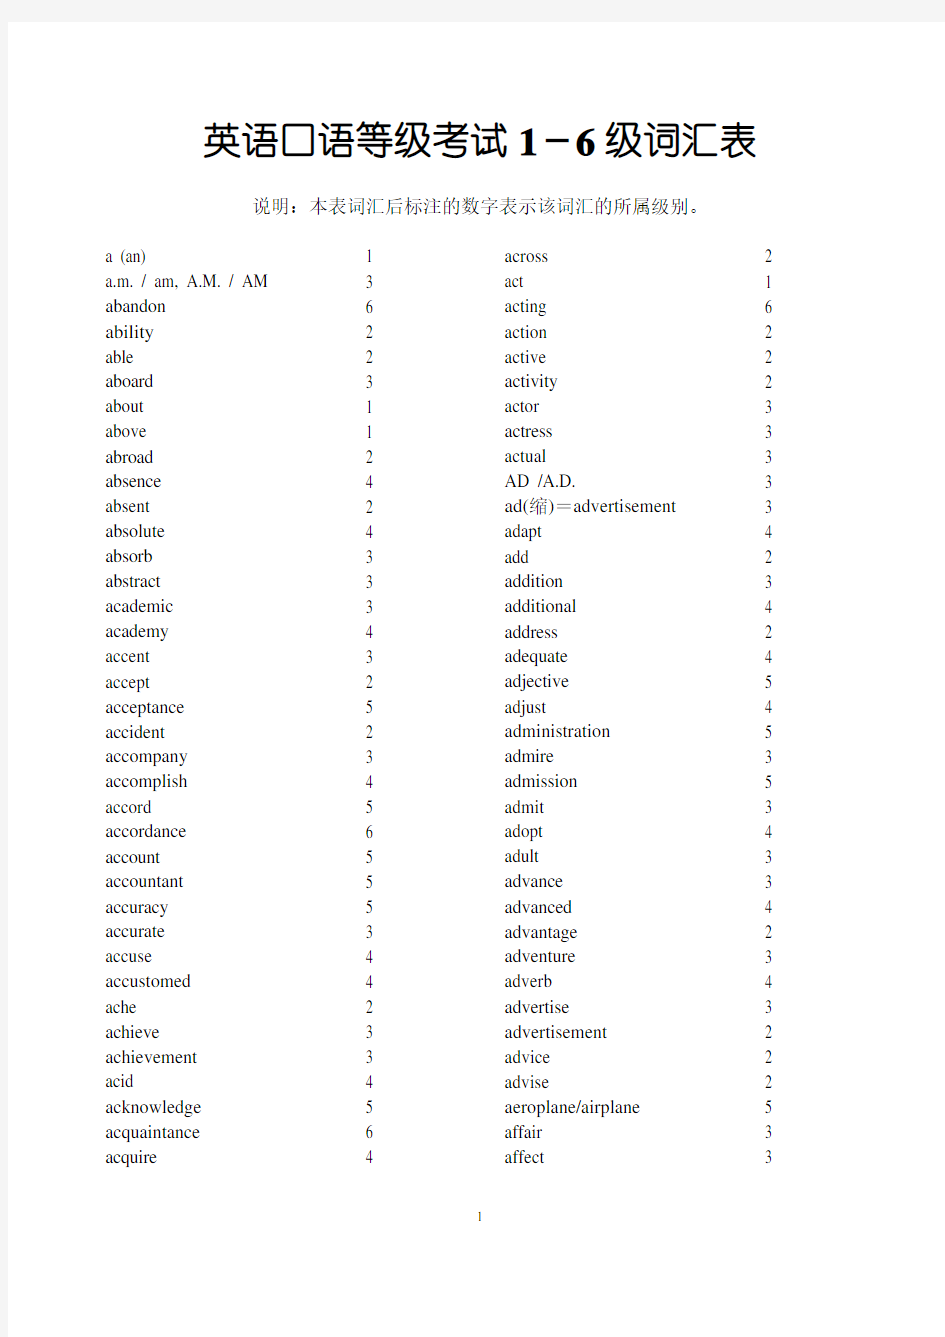 英语口语考试分级词汇表(1-6级)